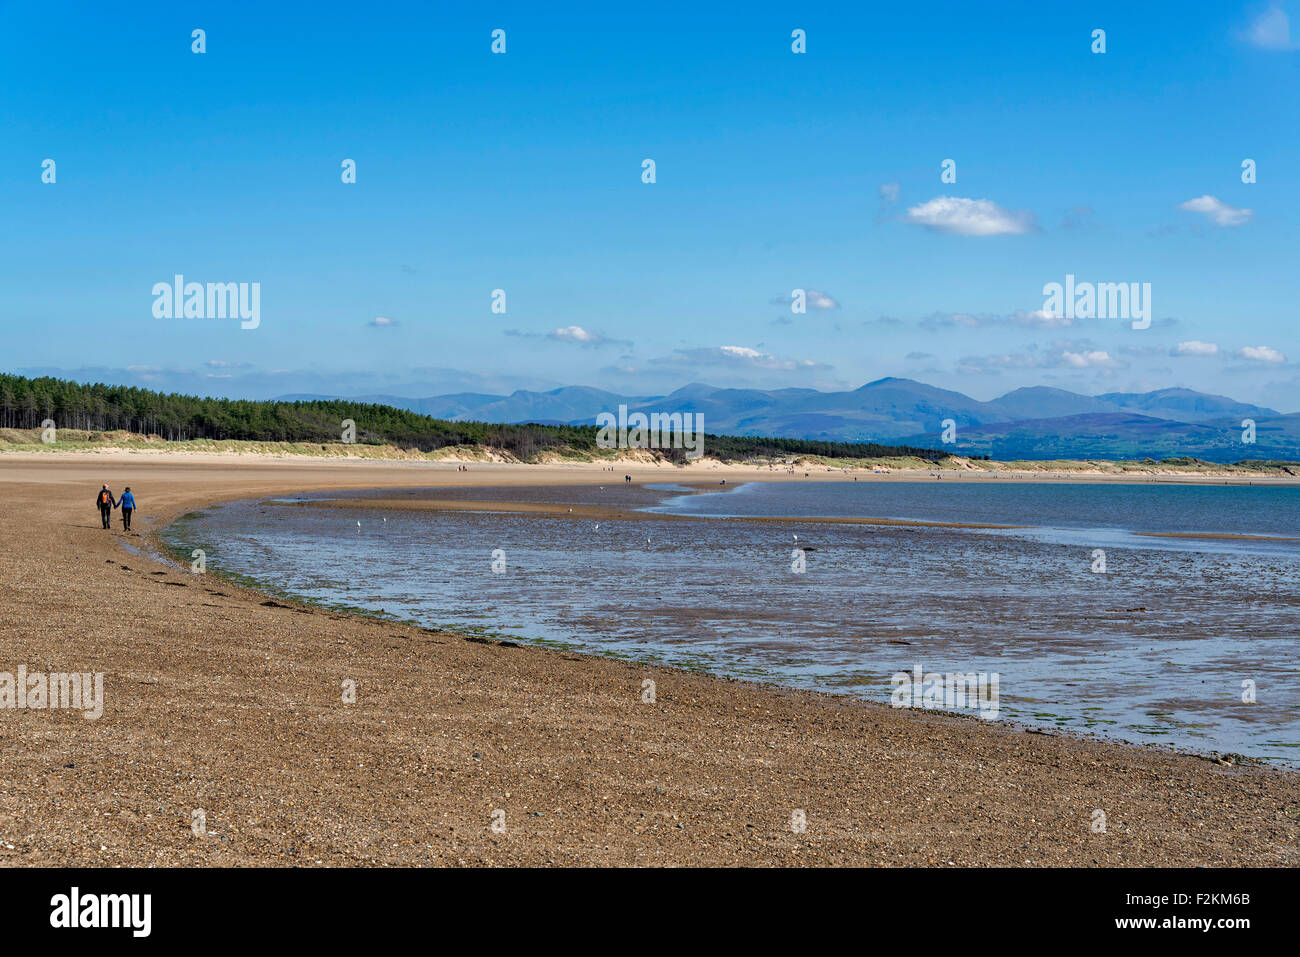 La plage de la baie de Llanddwyn. Anglesey au nord du Pays de Galles. Couple en train de marcher. Montagnes de Snowdonia en arrière-plan. Banque D'Images